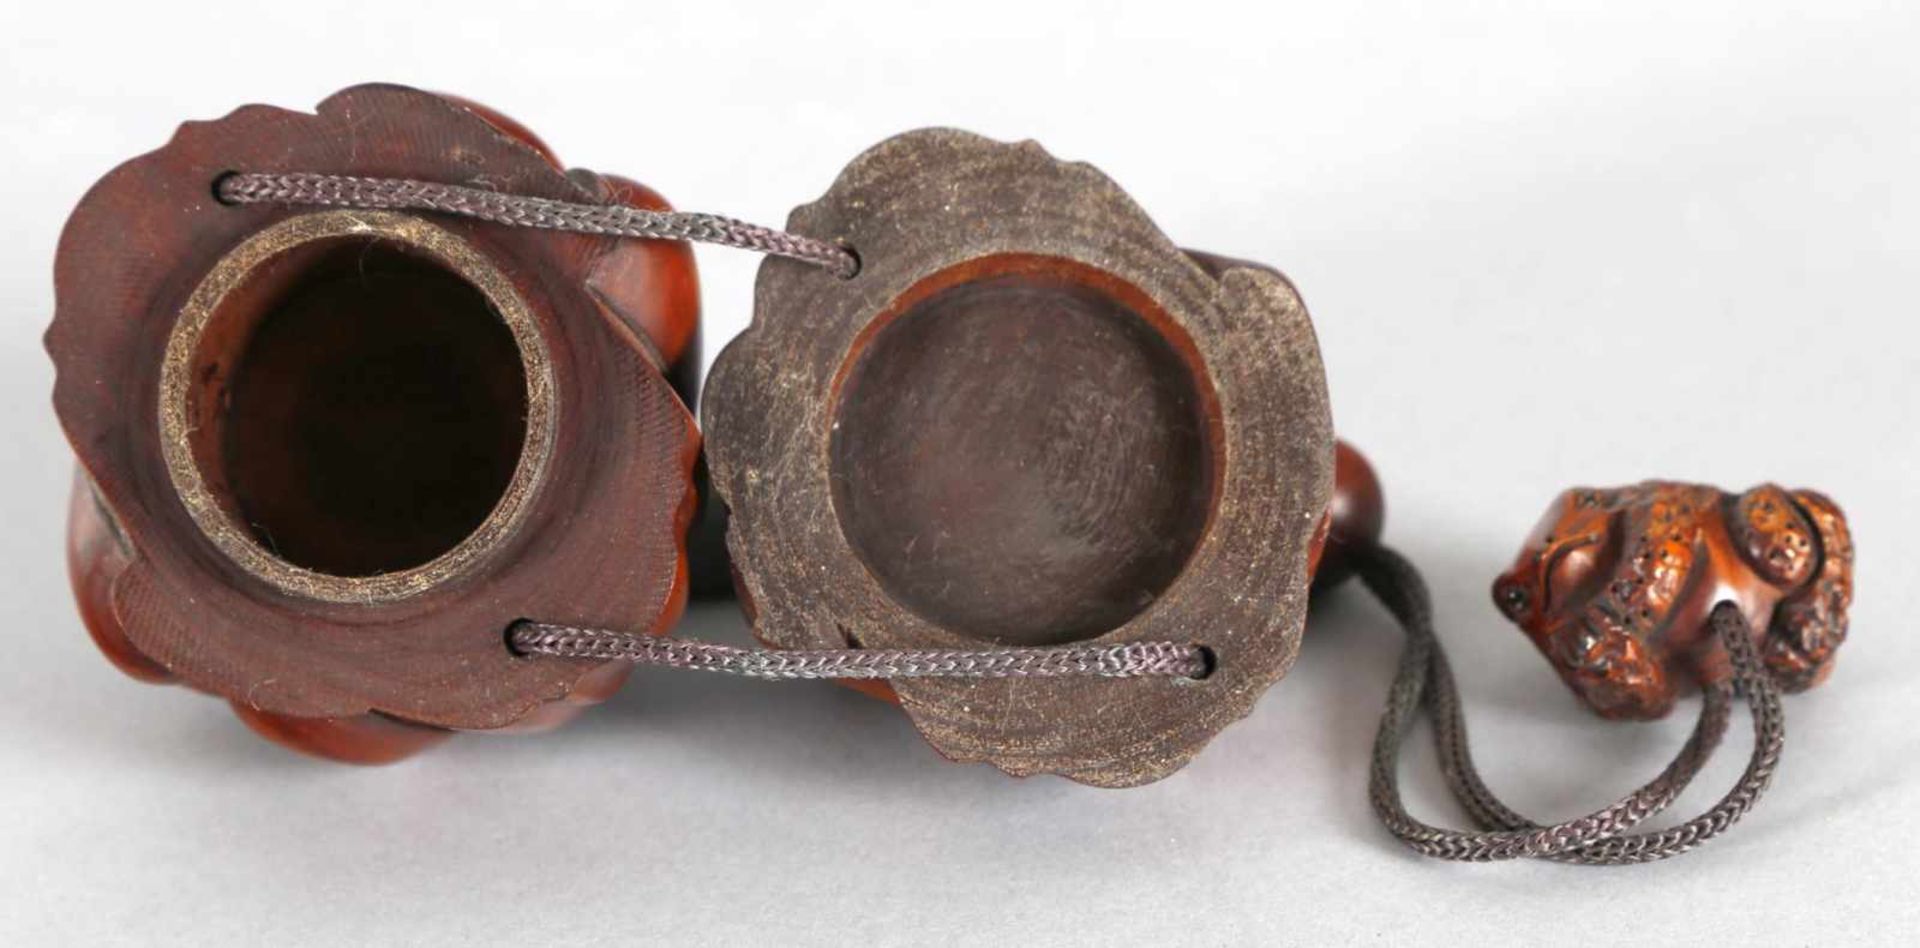 Sagemono in Form zweier Frösche, 2-teilig, wohl Hinoki- oder Buchsholz, Japan, wohl 1. H. 19. Jh. - Bild 3 aus 5